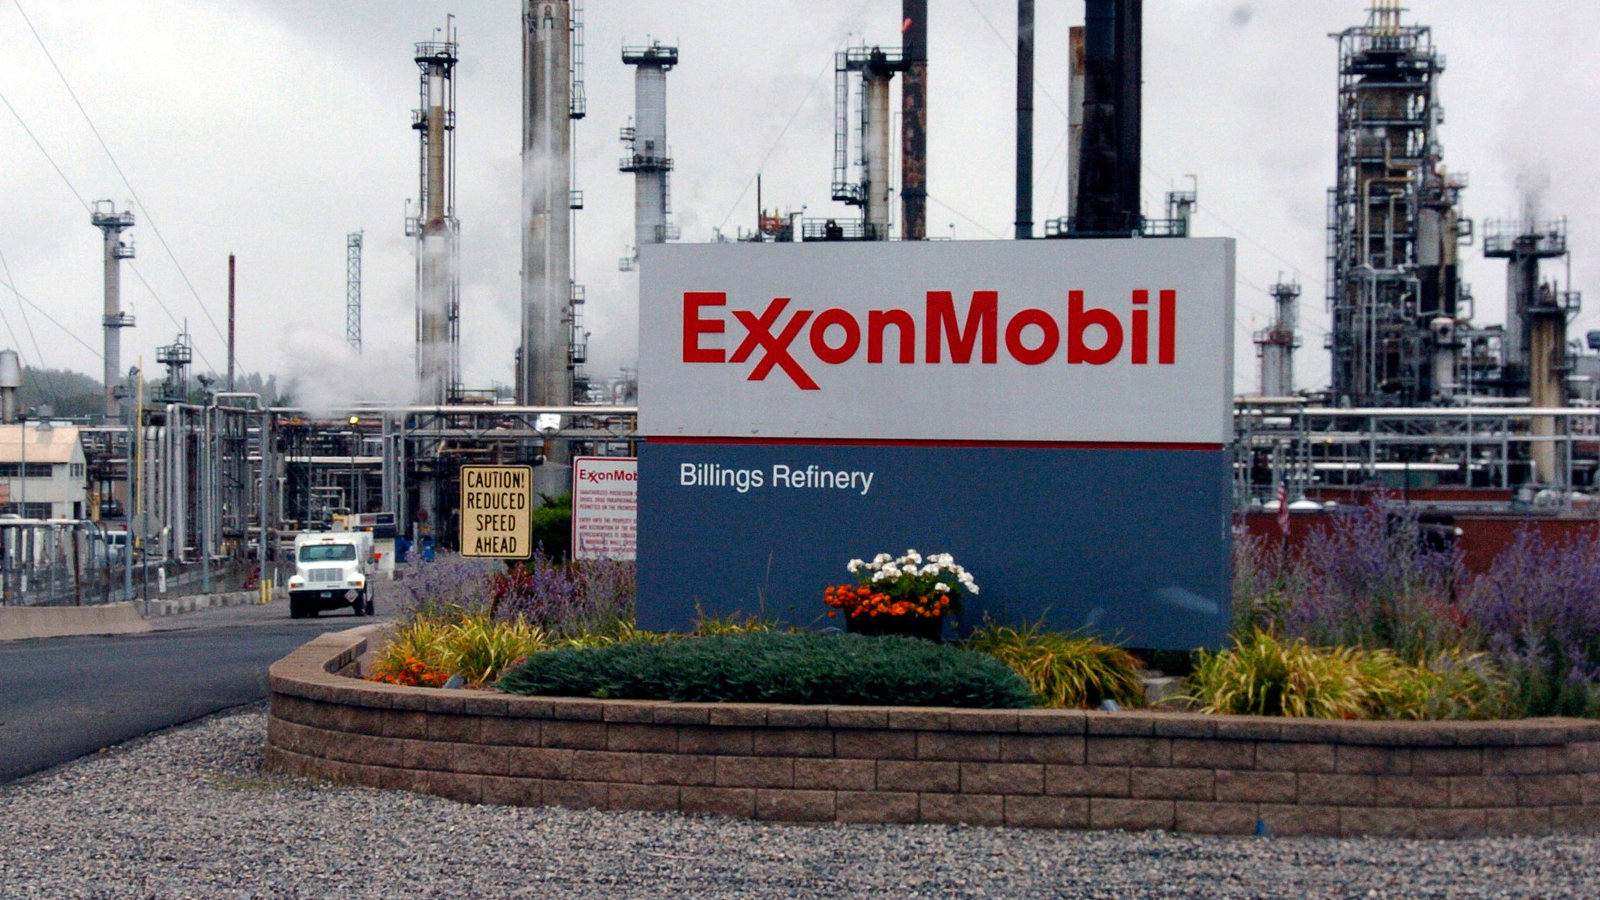 ExxonMobil Merger | The Brand Hopper